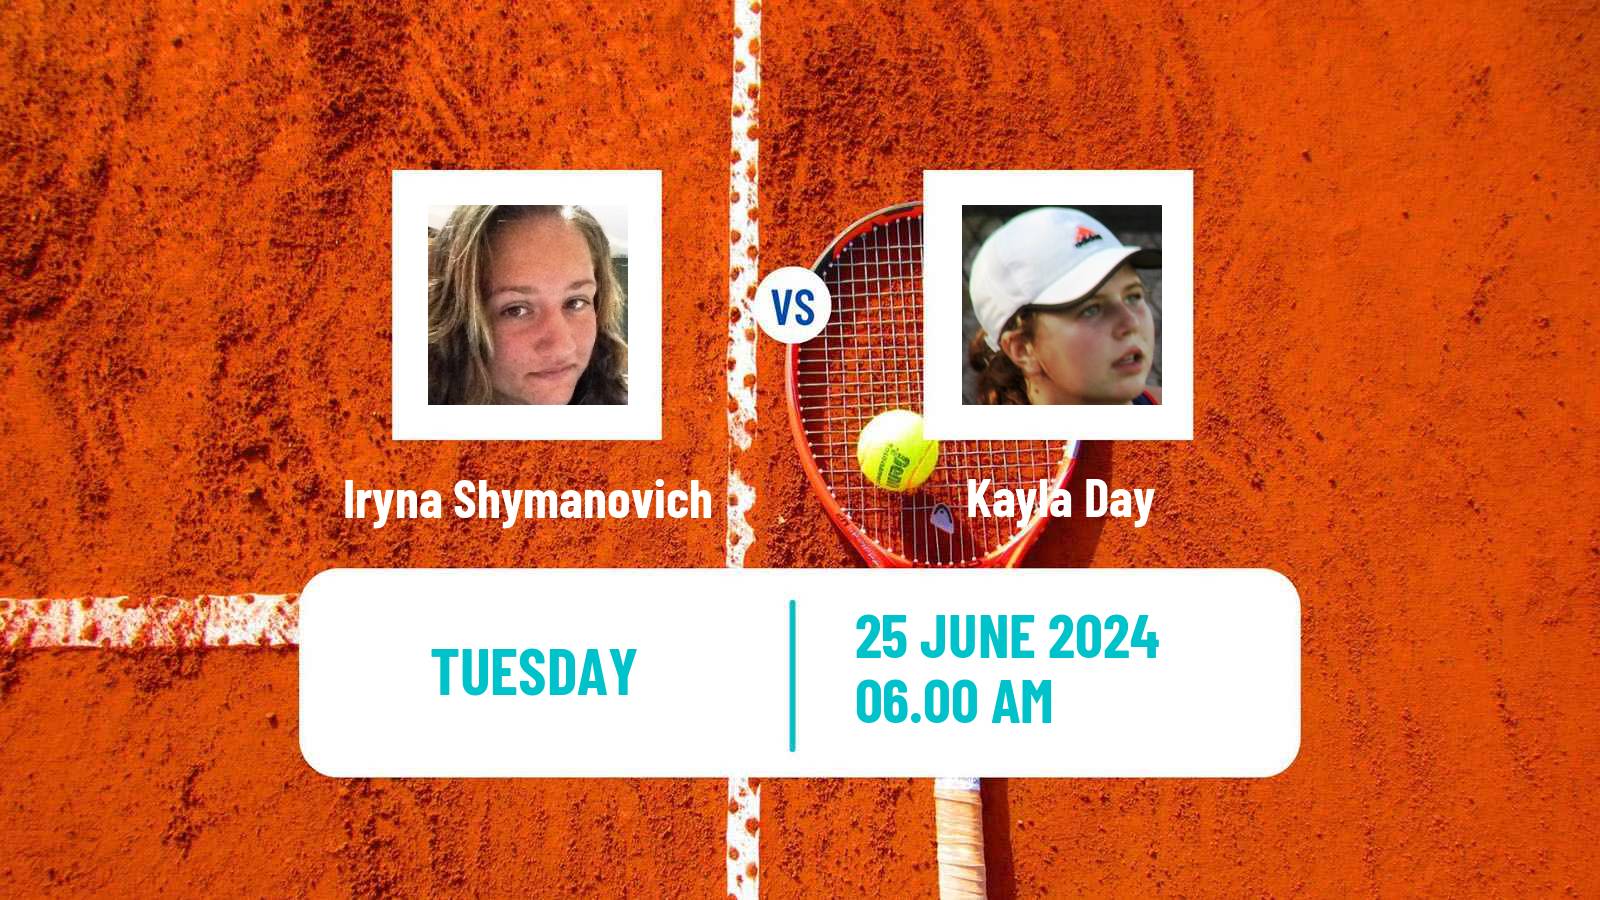 Tennis WTA Wimbledon Iryna Shymanovich - Kayla Day